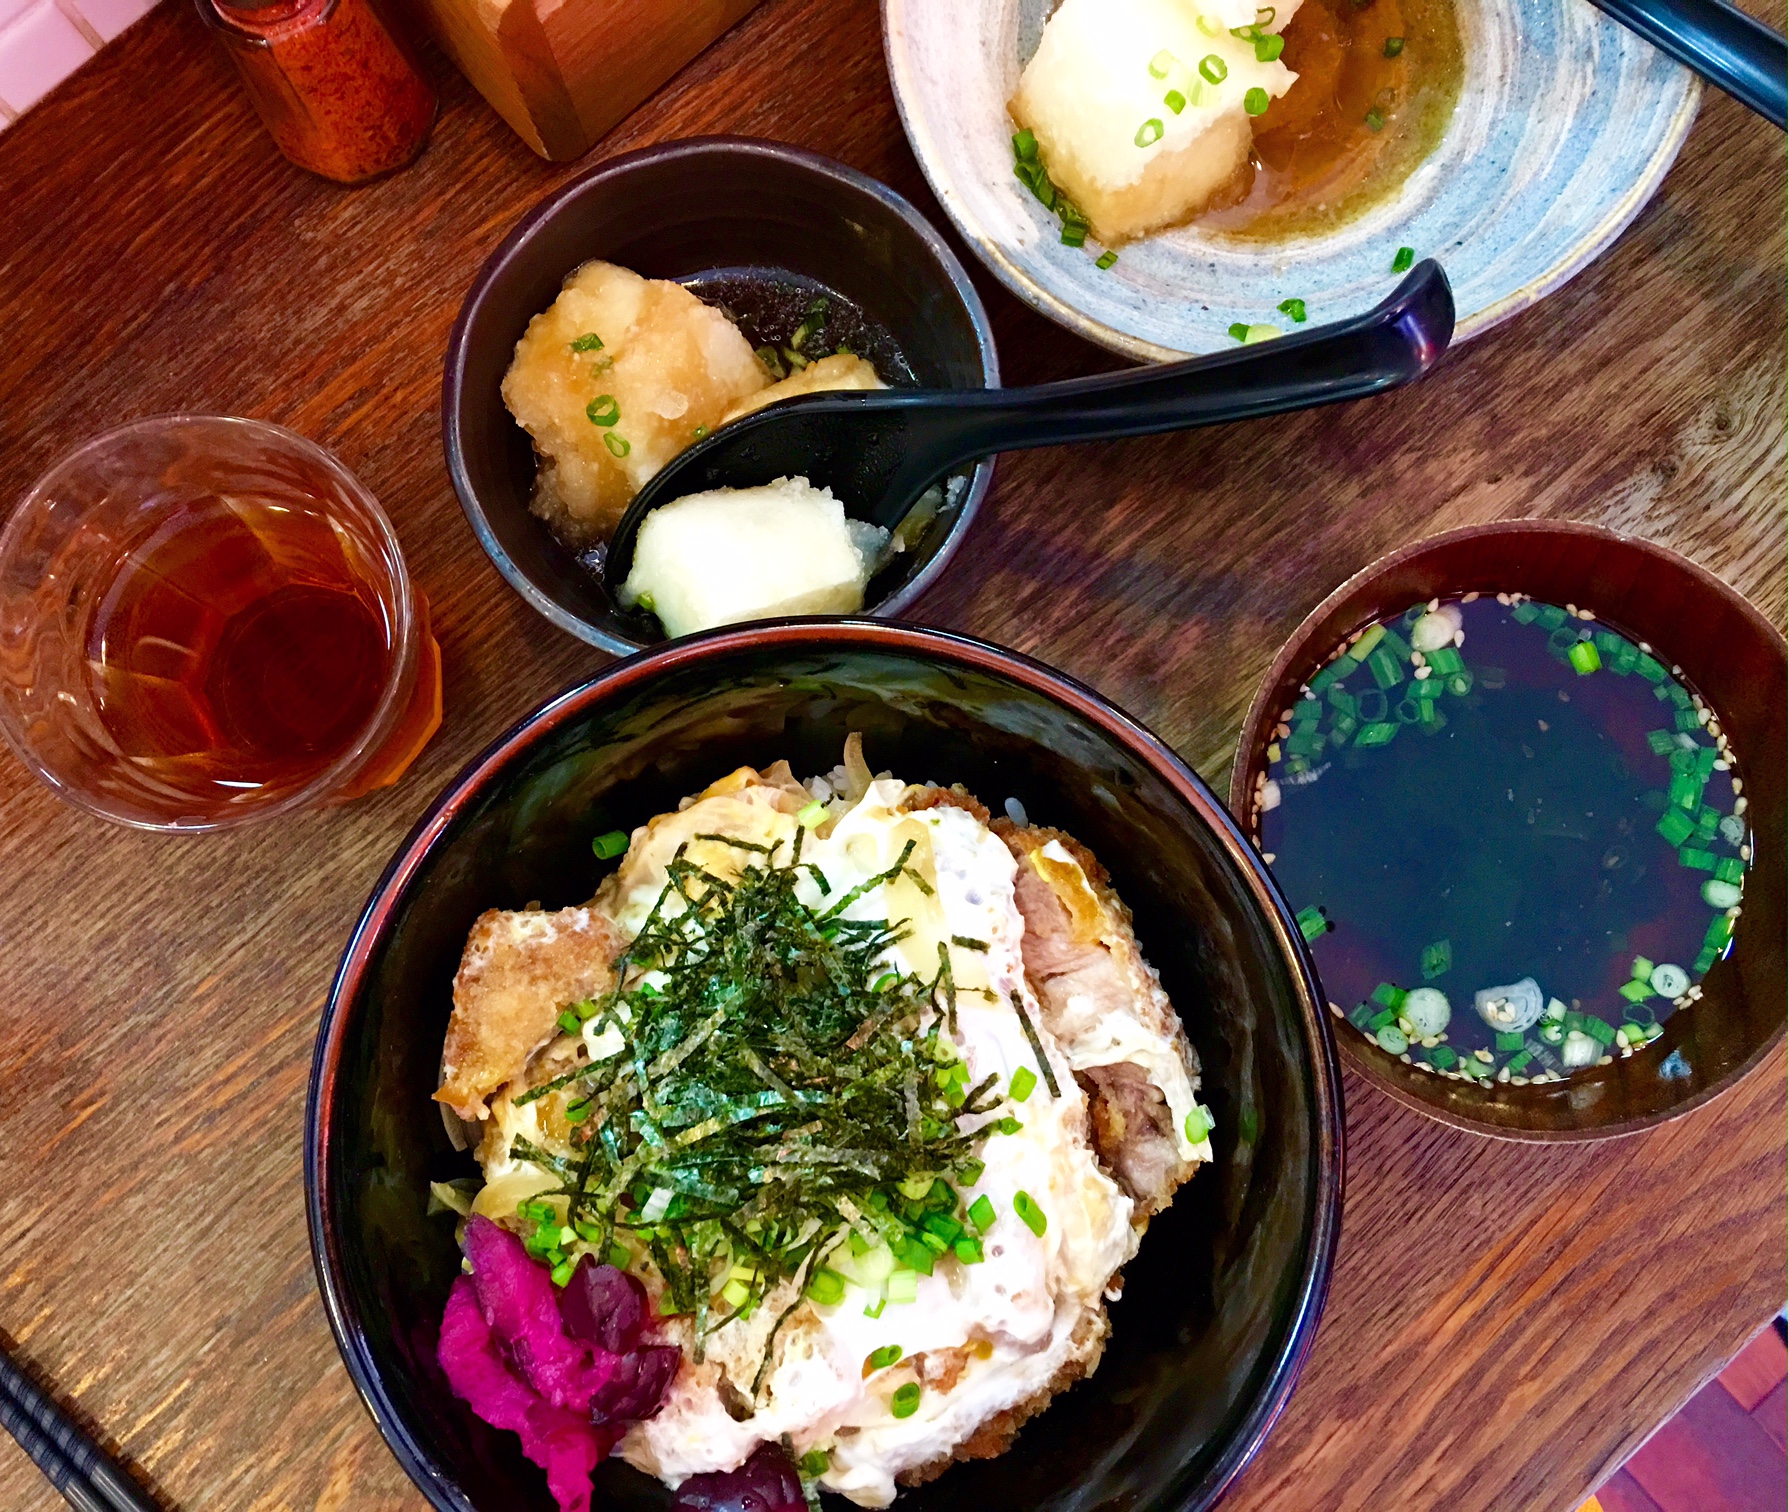 Sanukiya - Japanese Food Cravings Fulfilled in Paris, France